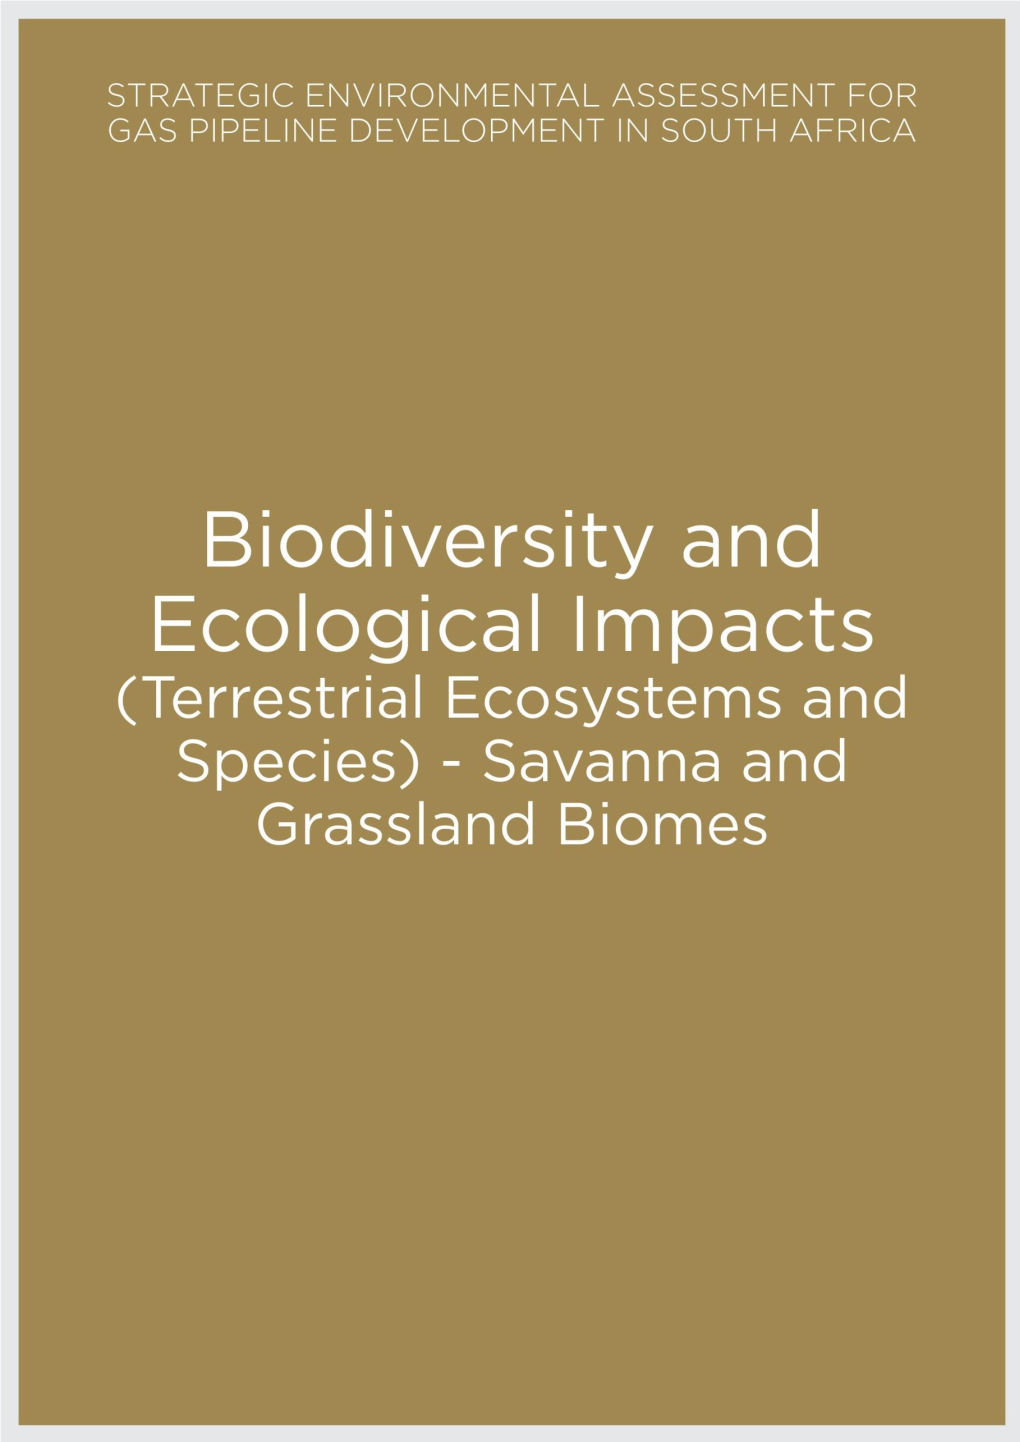 Savanna and Grassland Biomes